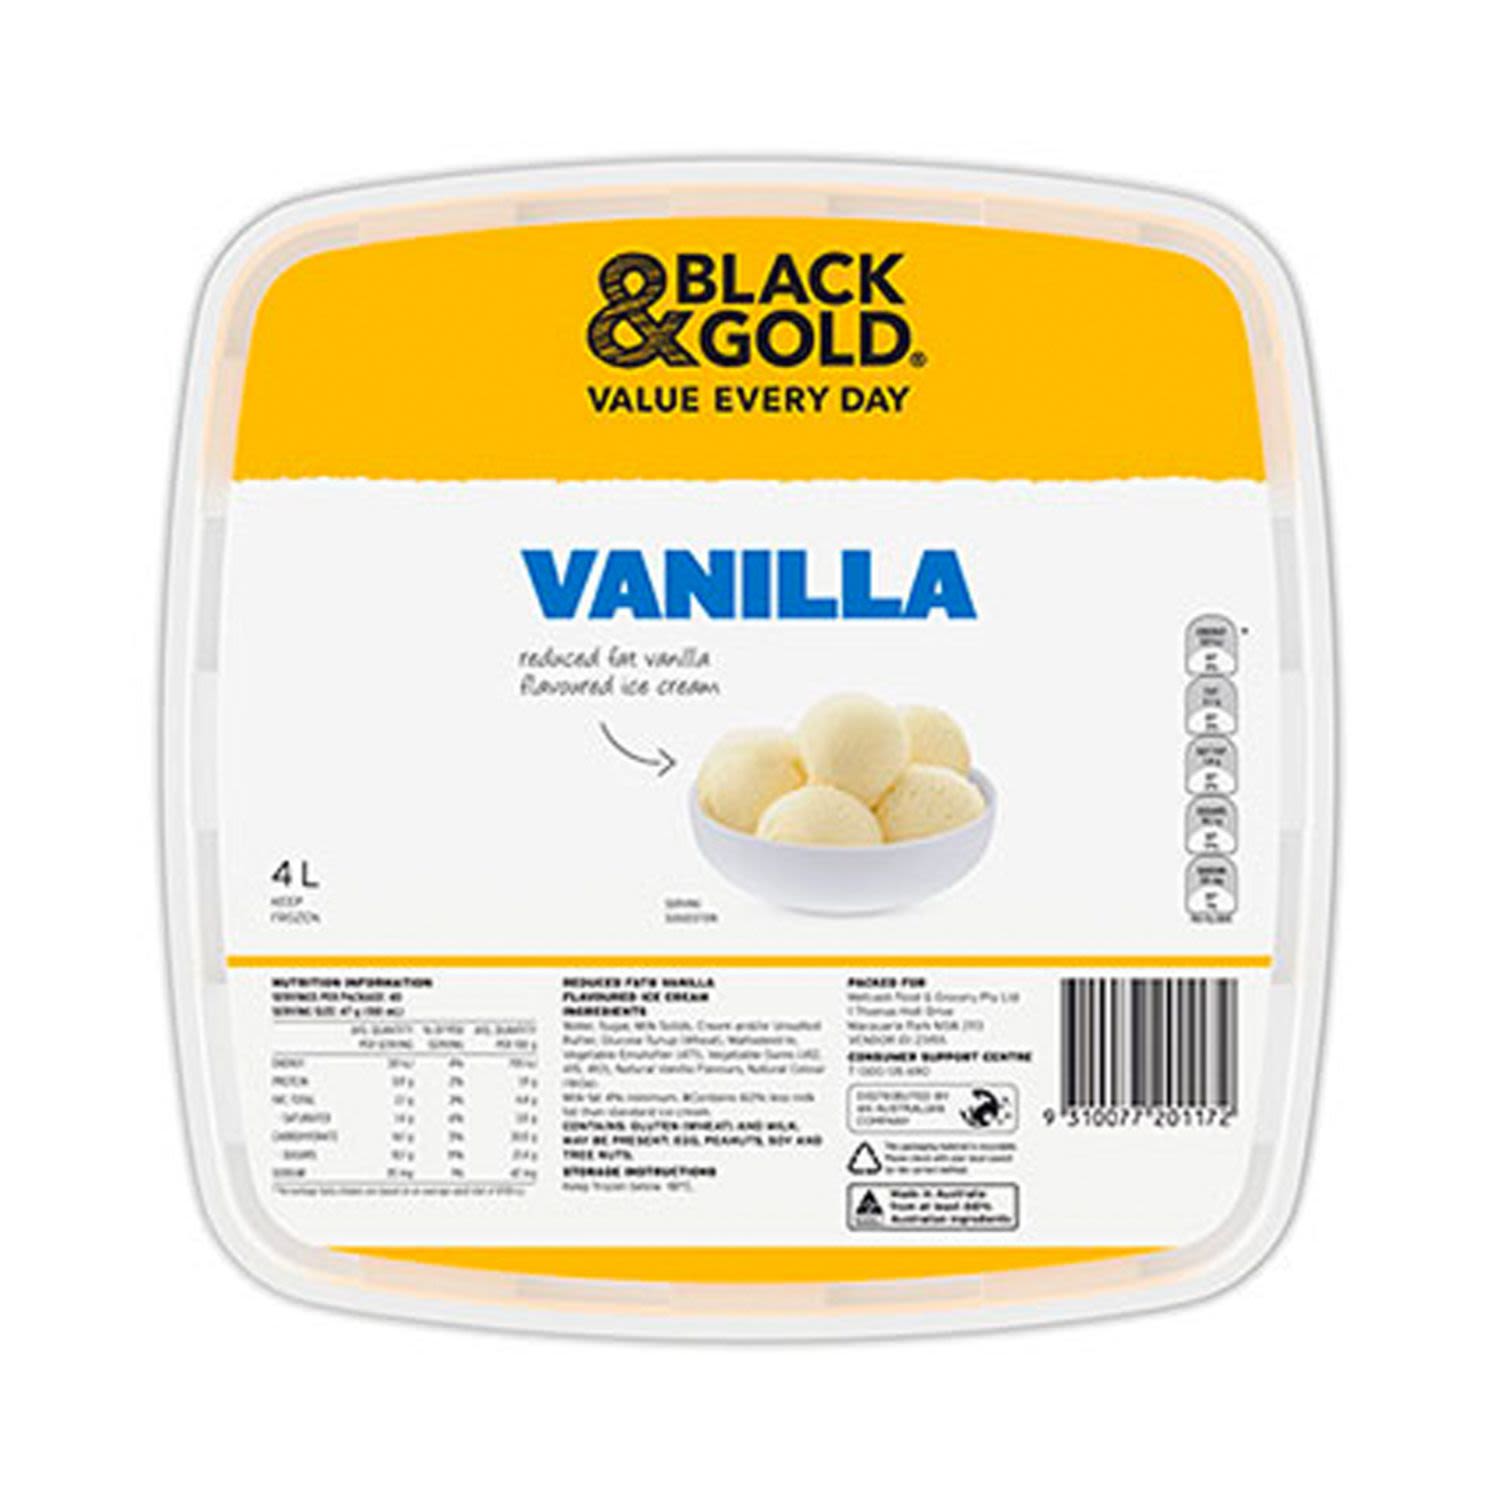 Black & Gold Vanilla Reduced Fat Ice Cream, 4 Litre